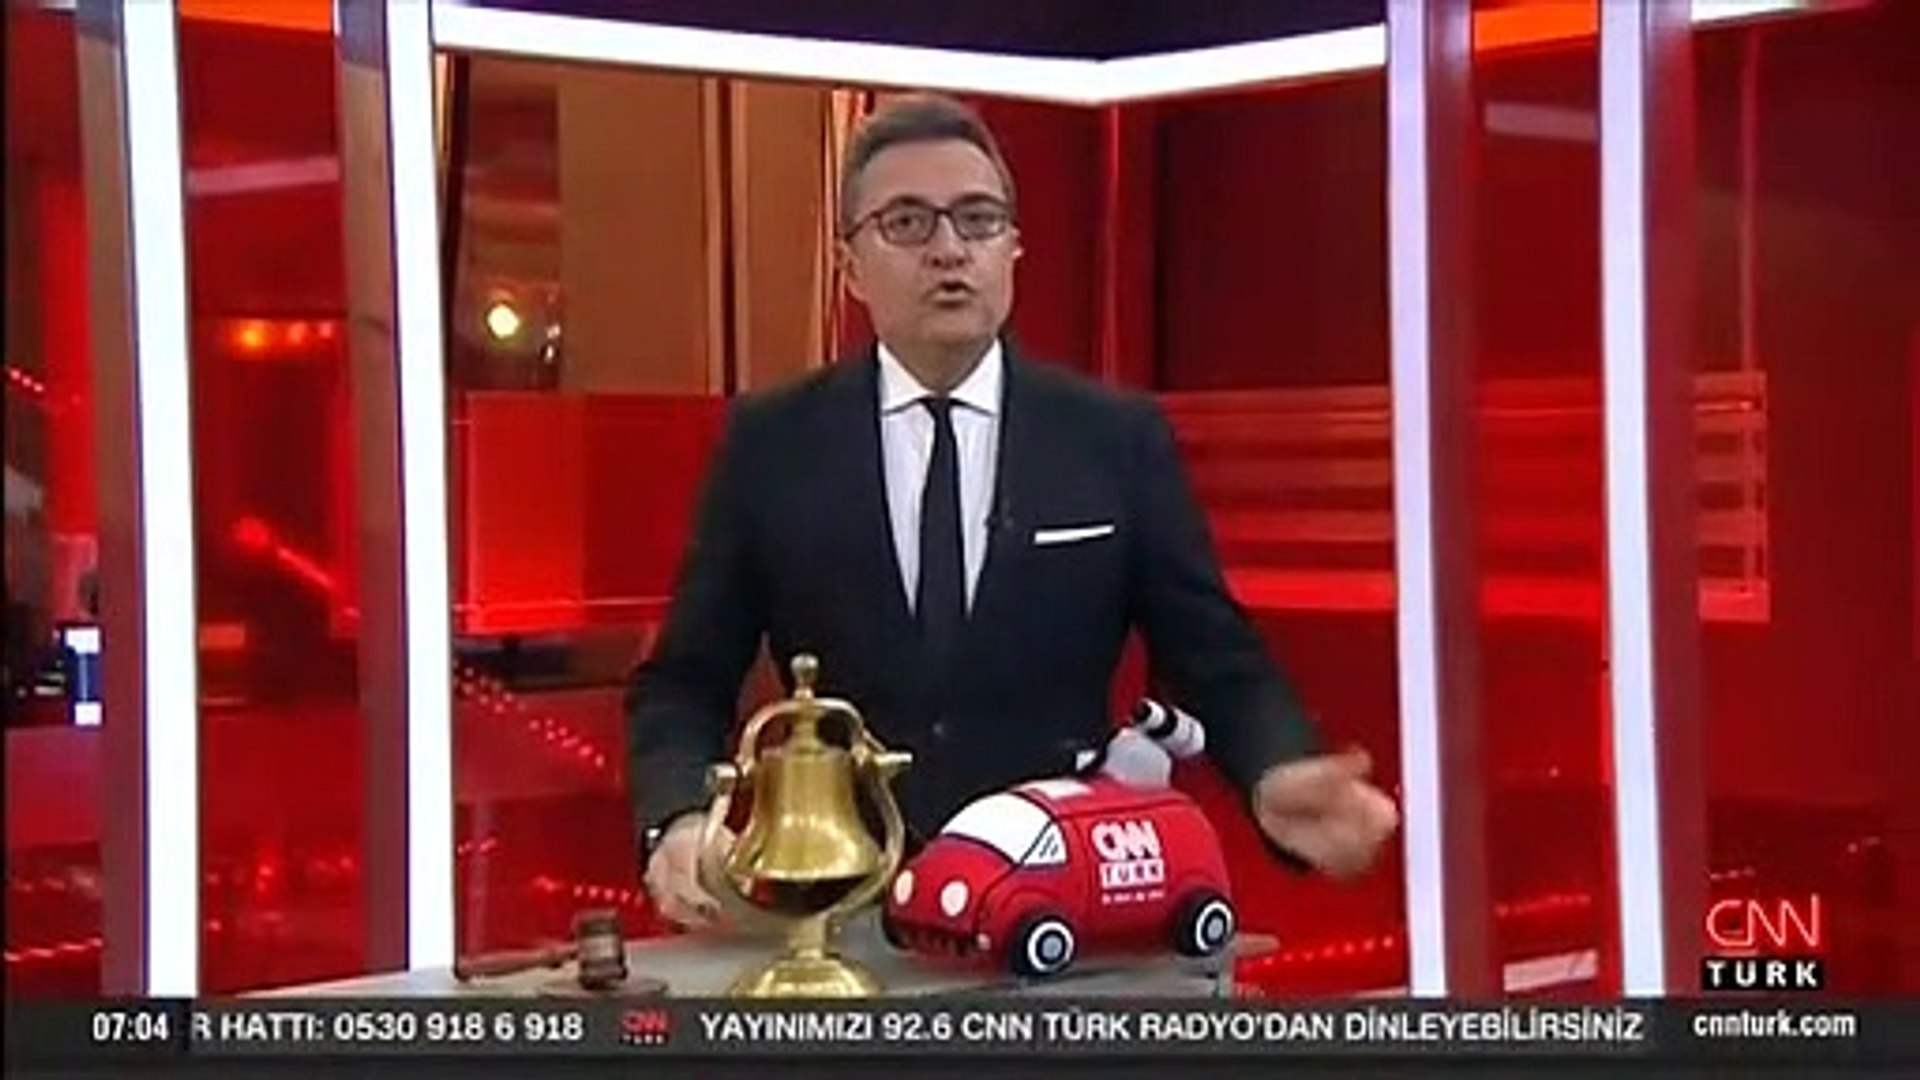 21 Kasım 2022 Pazartesi gününün son dakika önemli gelişmeleri! (CNN TÜRK  11.30 bülteni) - Dailymotion Video